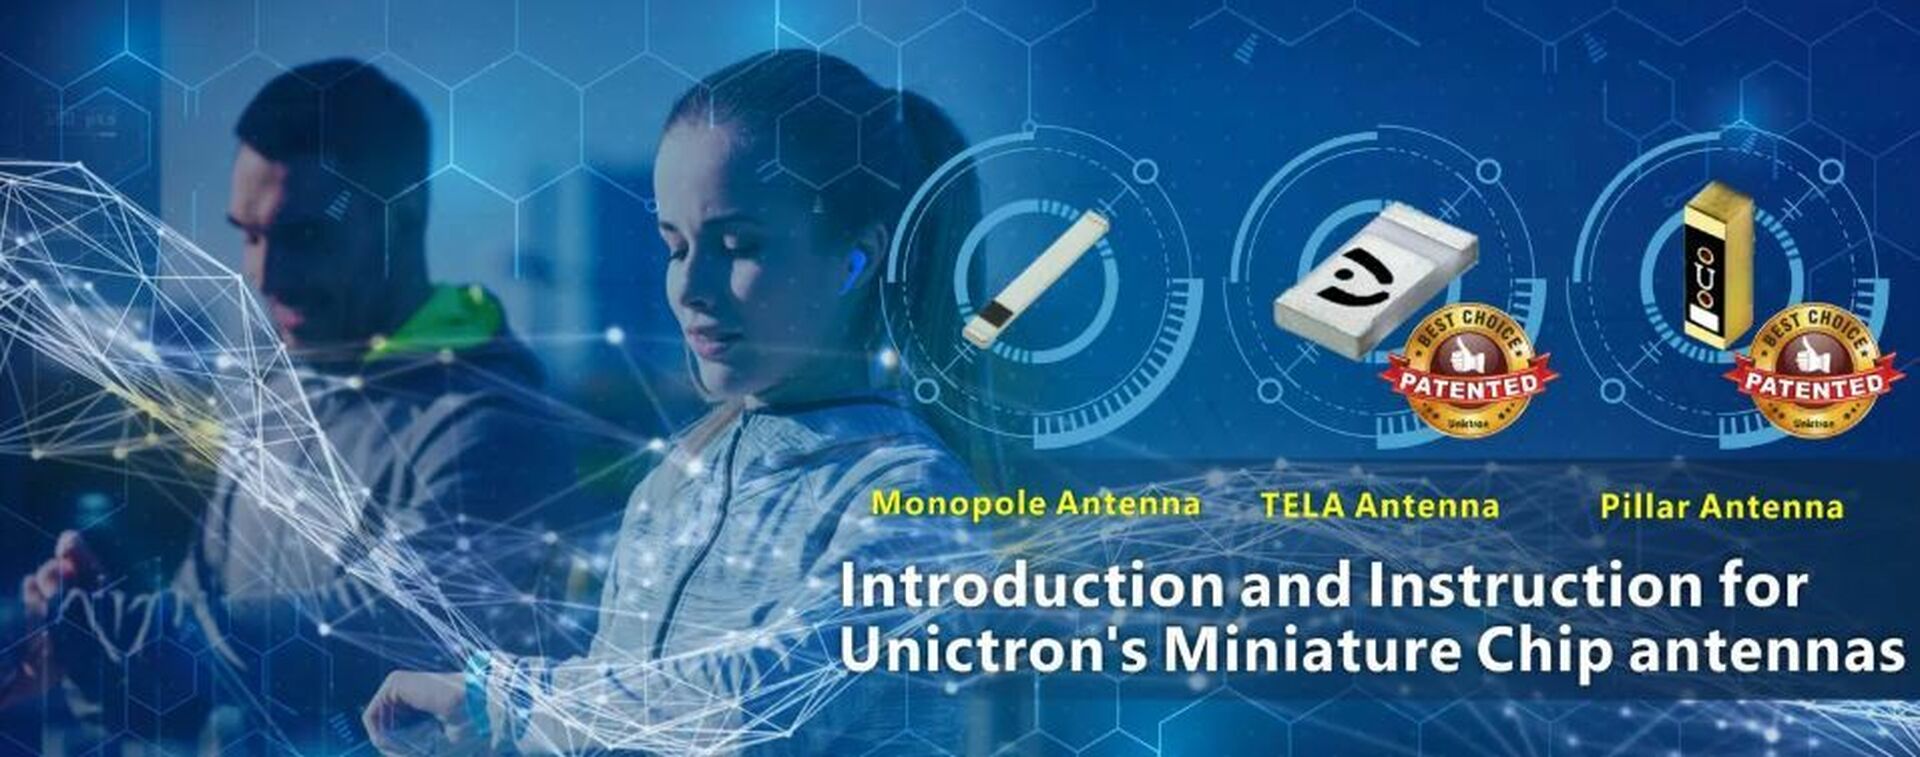 Unictron miniature antennas